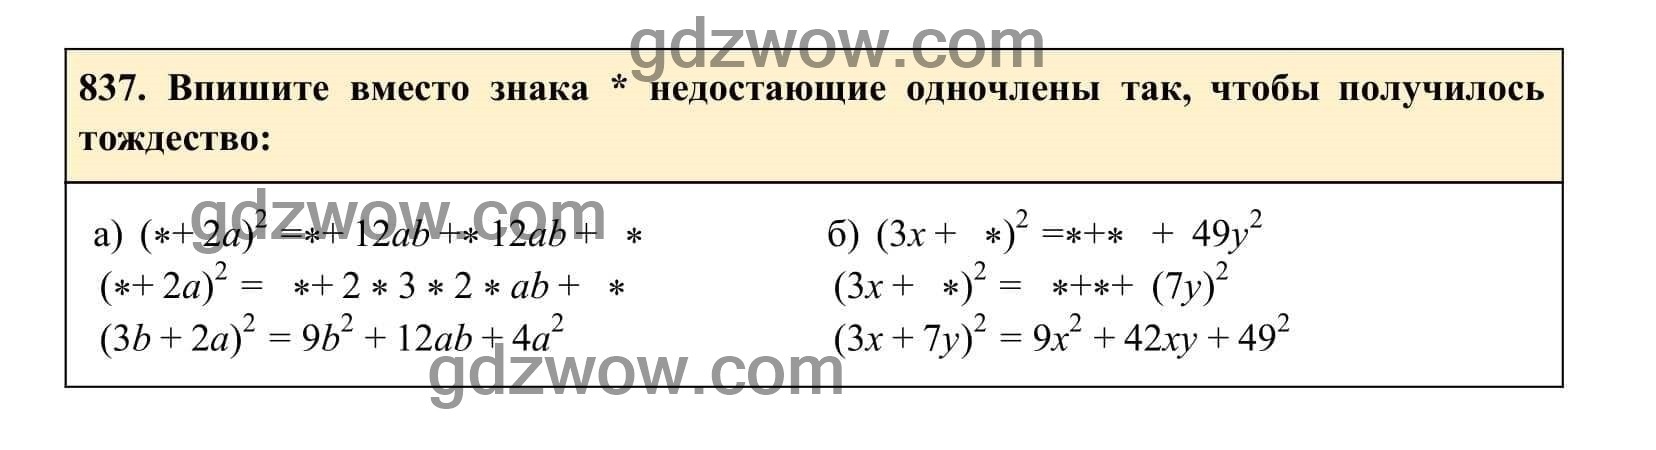 Упражнение 837 - ГДЗ по Алгебре 7 класс Учебник Макарычев (решебник) - GDZwow